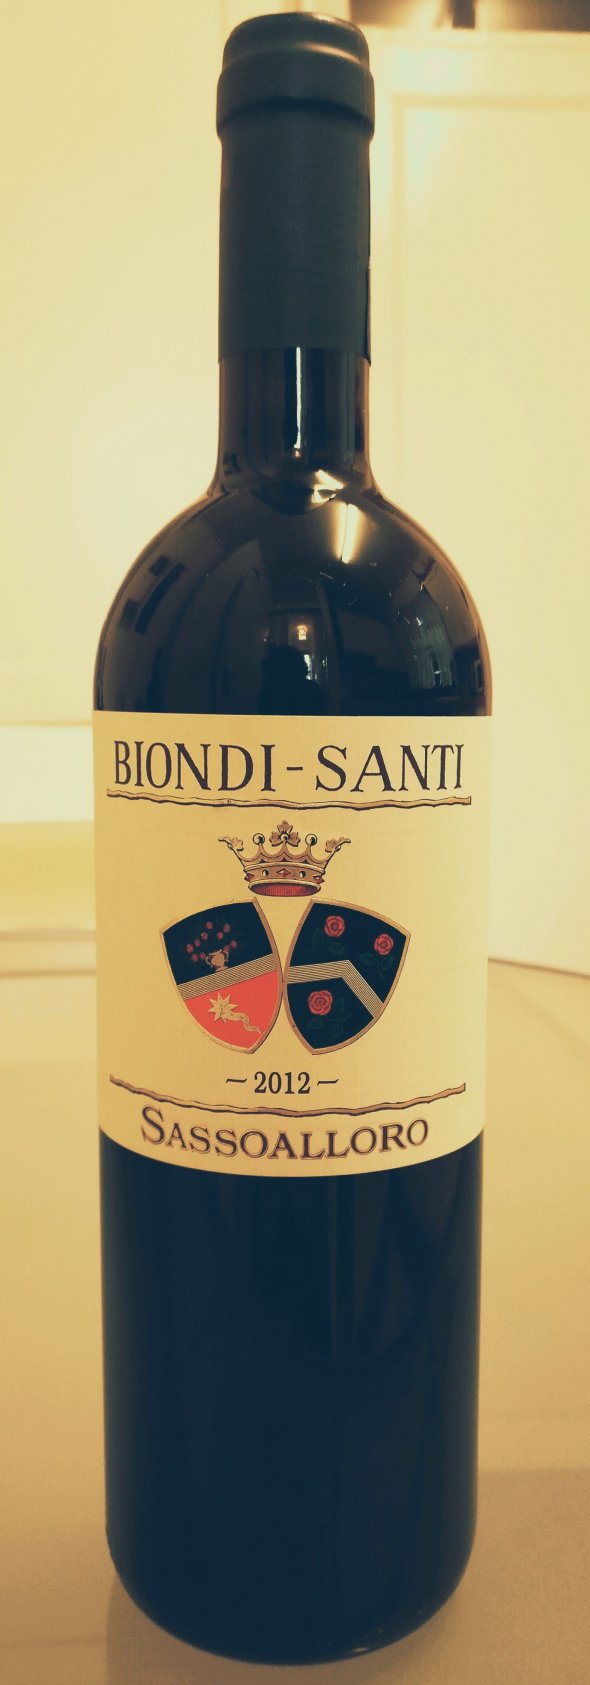 Biondi Santi (Jacopo) Tuscan Red